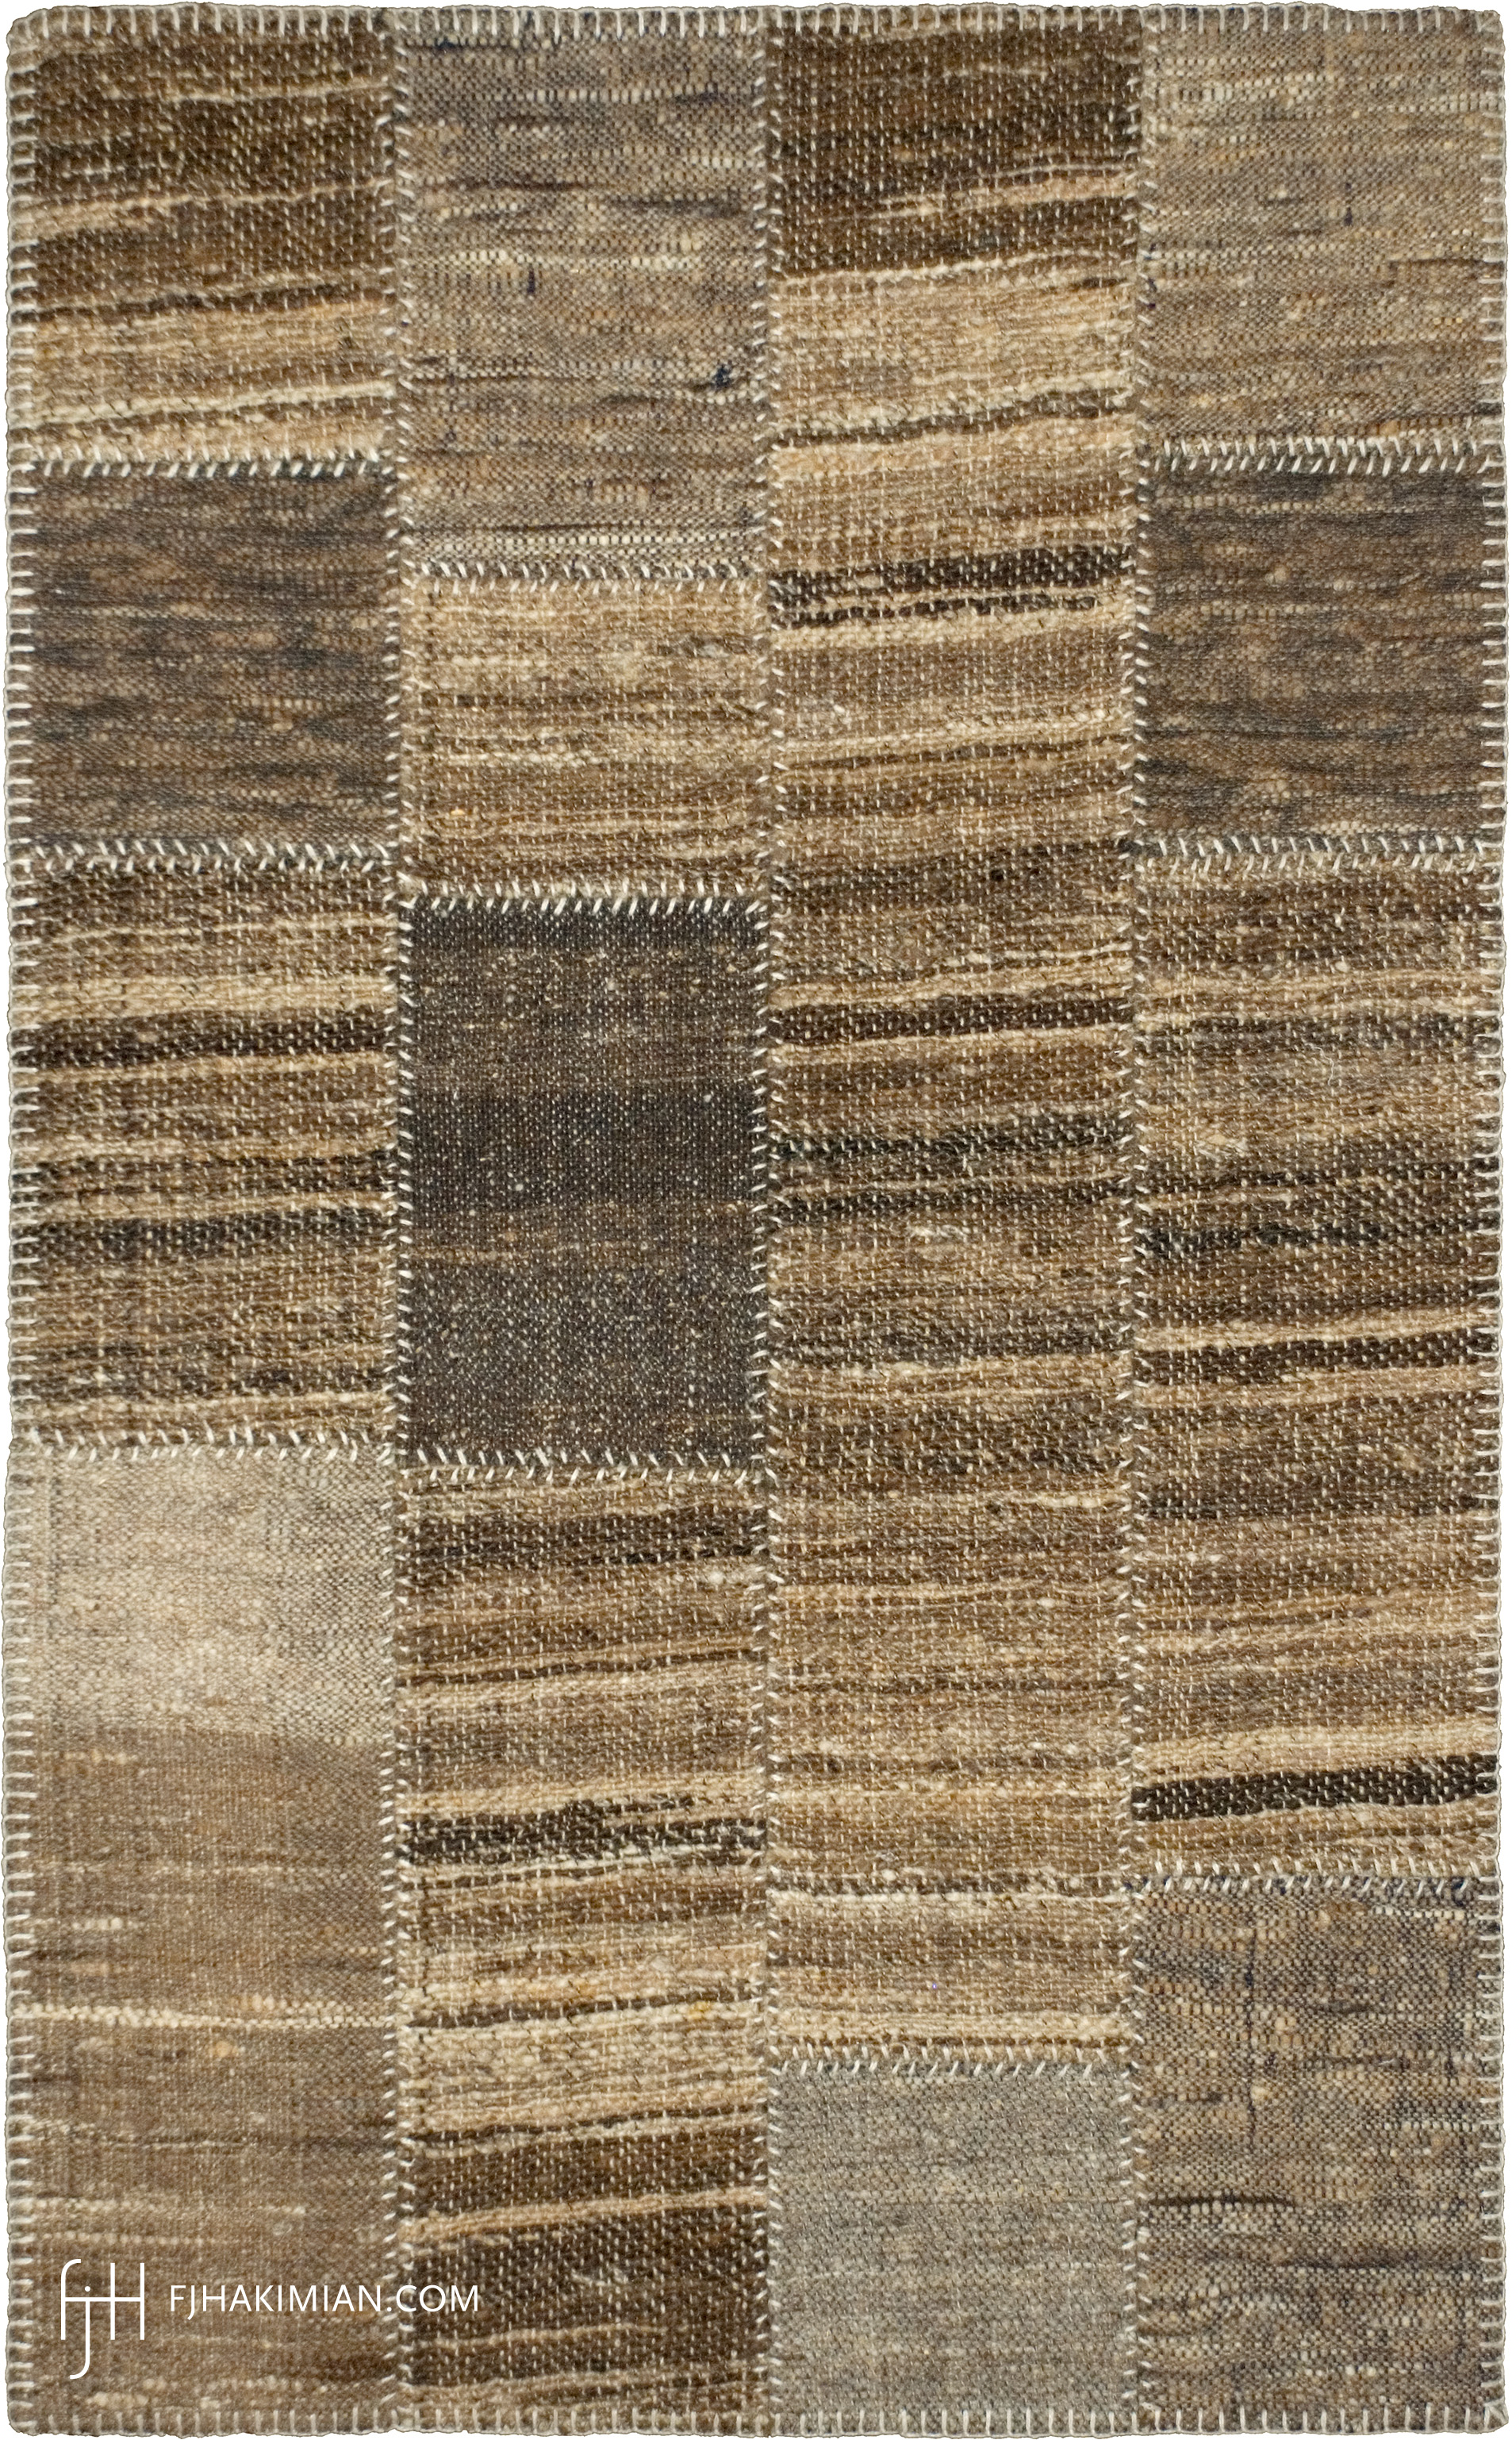 FJ Hakimian | 37408 | VKC Custom Carpet